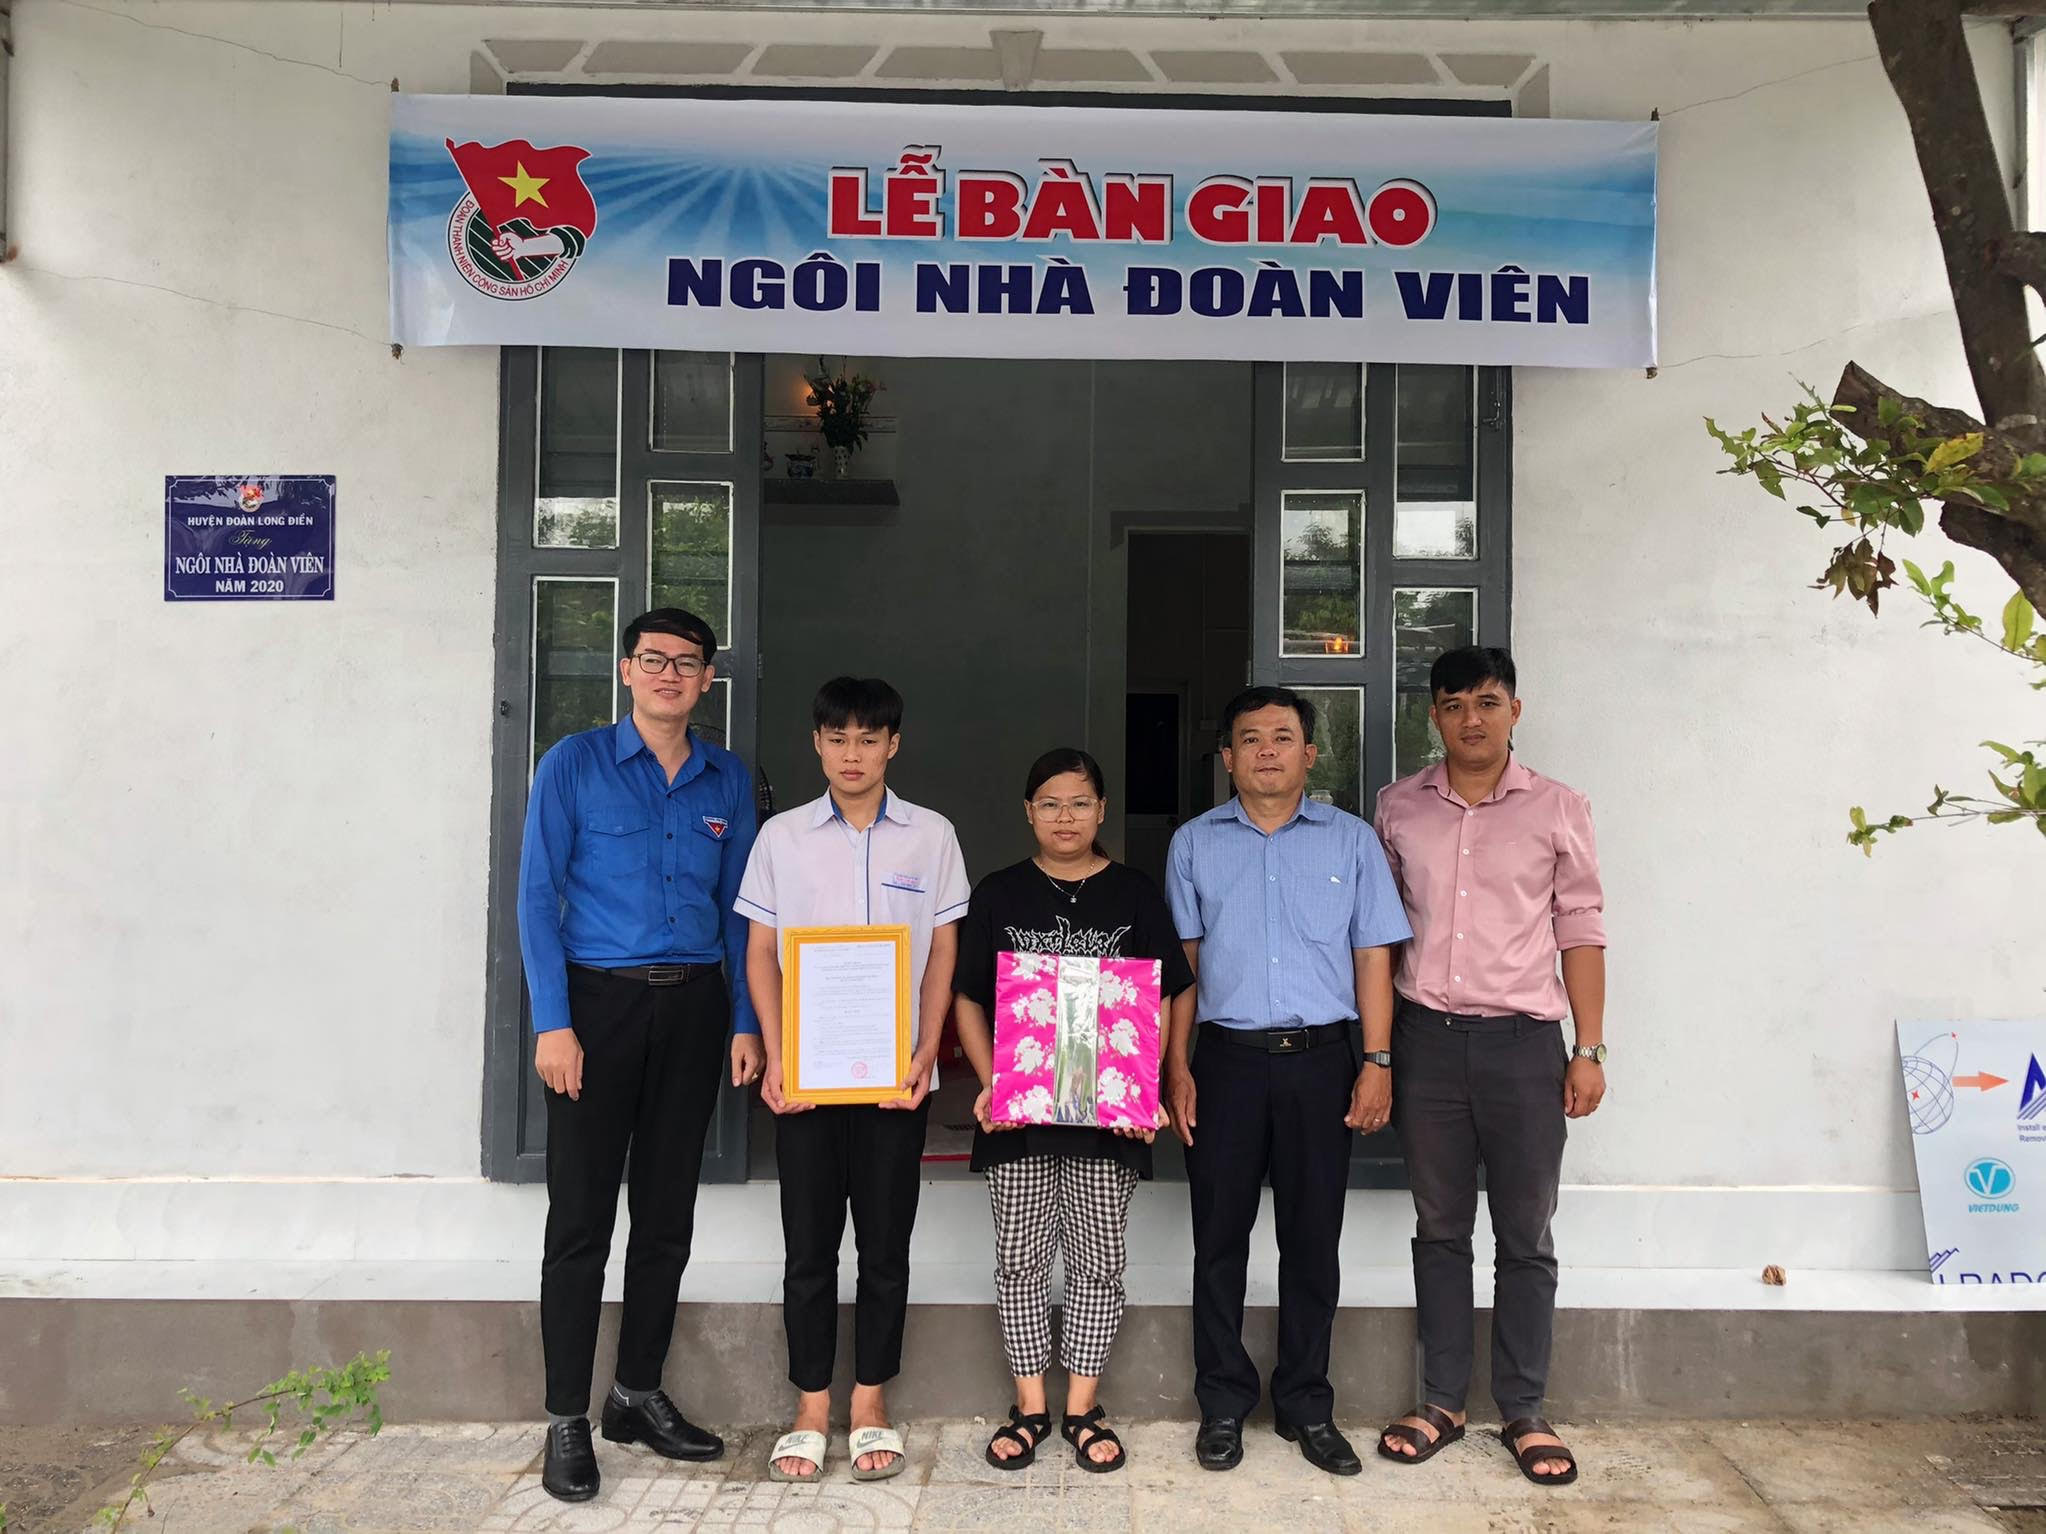 Lễ bàn giao “Ngôi nhà đoàn viên” cho gia đình em Nguyễn Lê Hoài Thạnh. 